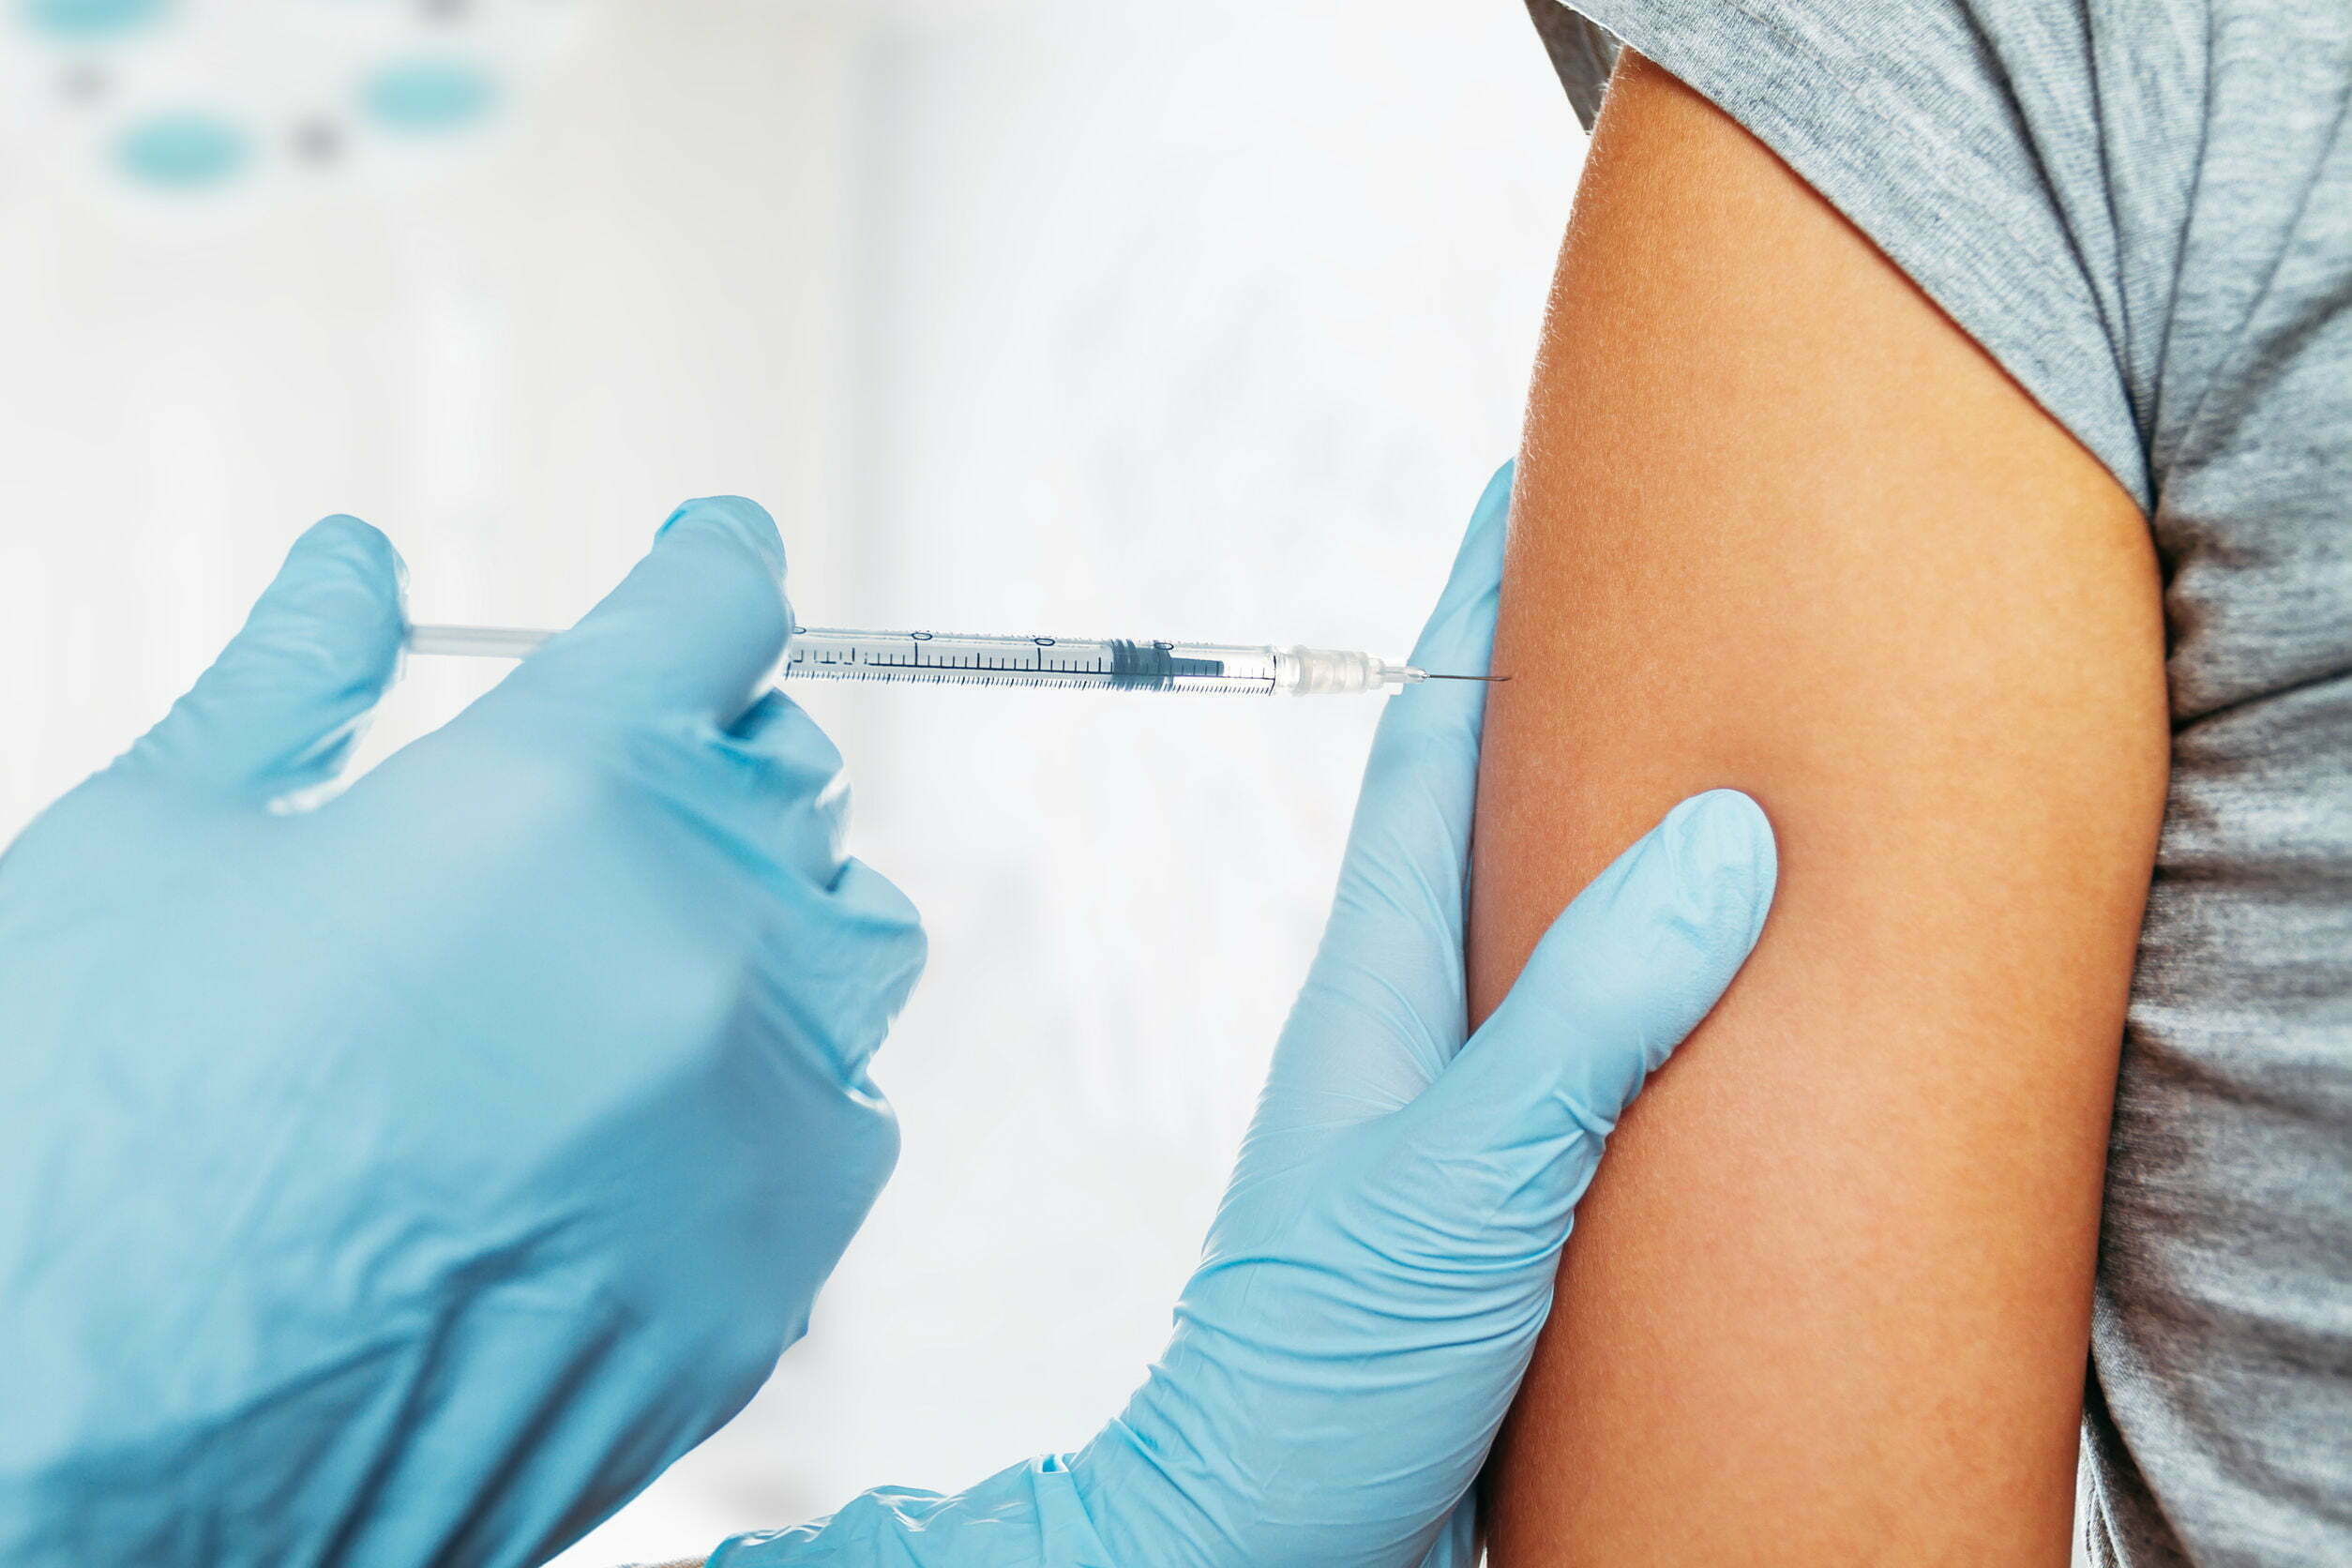 Poll: Moet het coronavaccin worden verplicht? 9